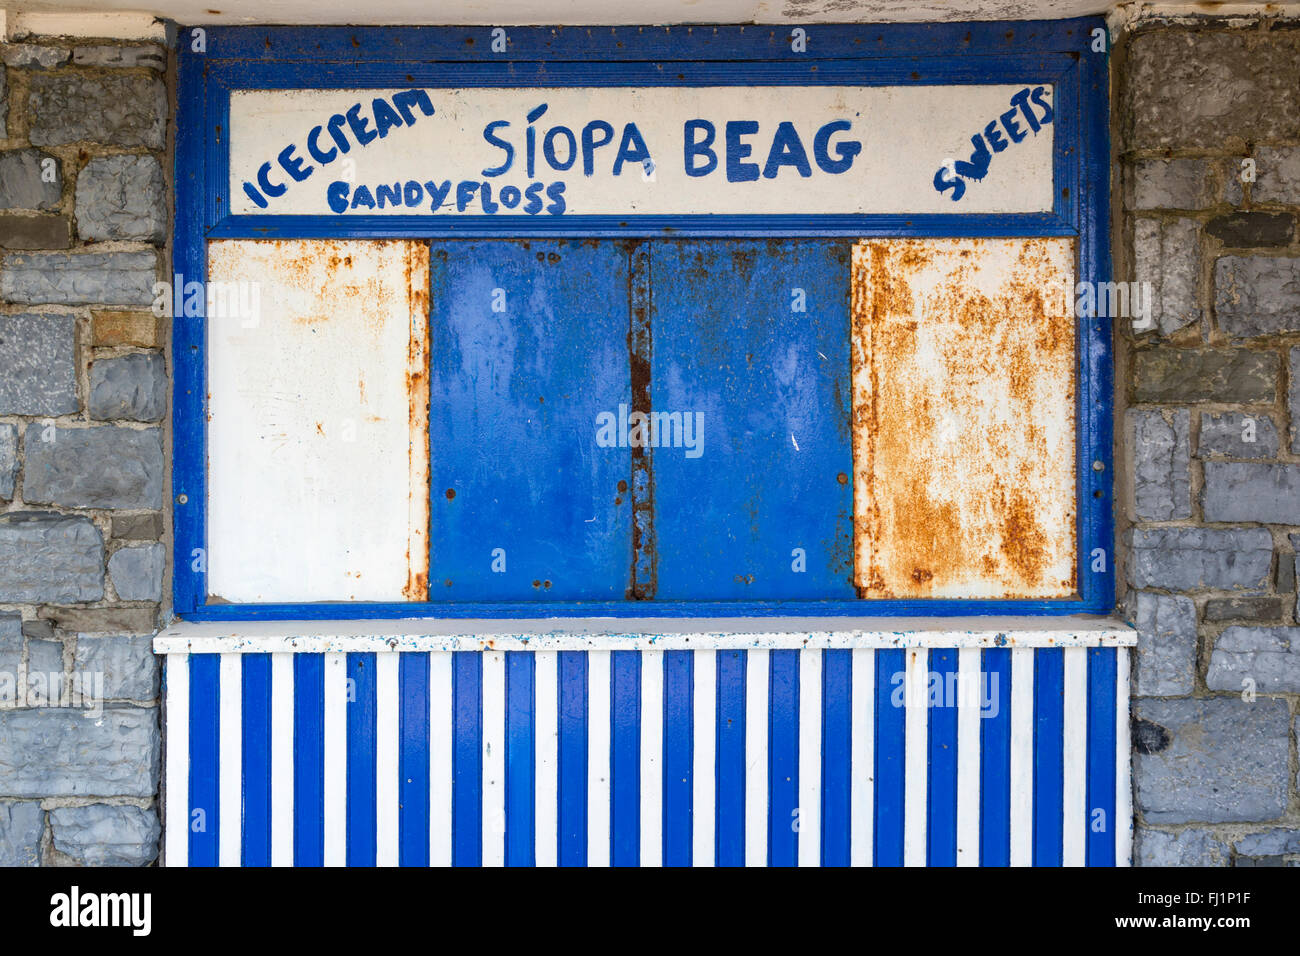 Clausurado sweetshop Costera irlandesa con el idioma irlandés Síopa Beag (Pequeña tienda). Foto de stock